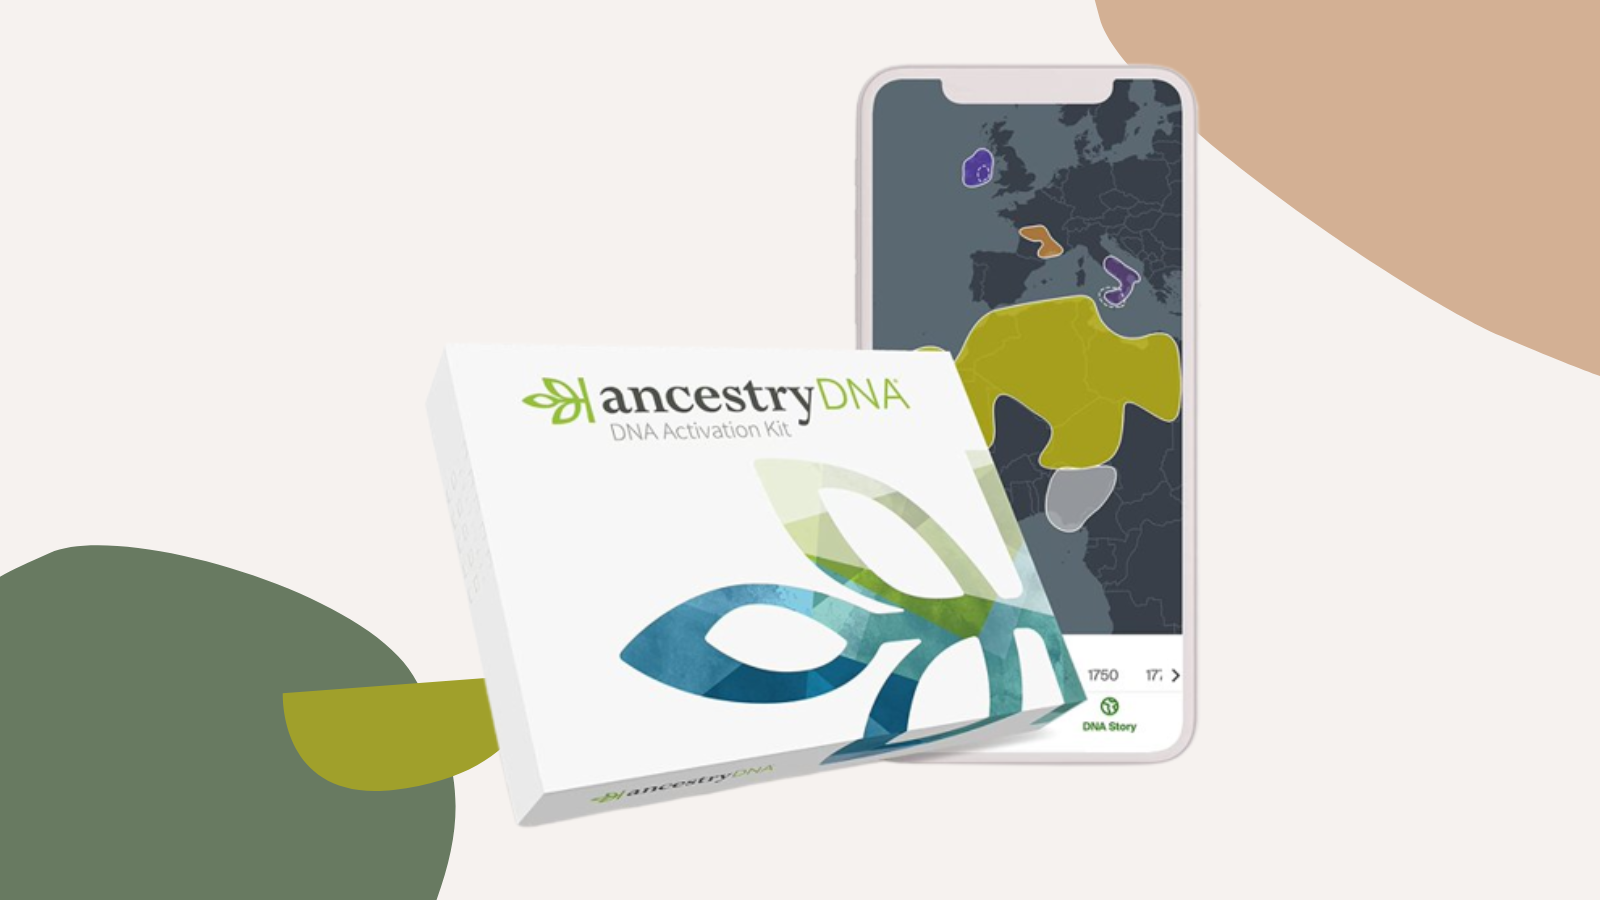 ancestrydna test kit with app